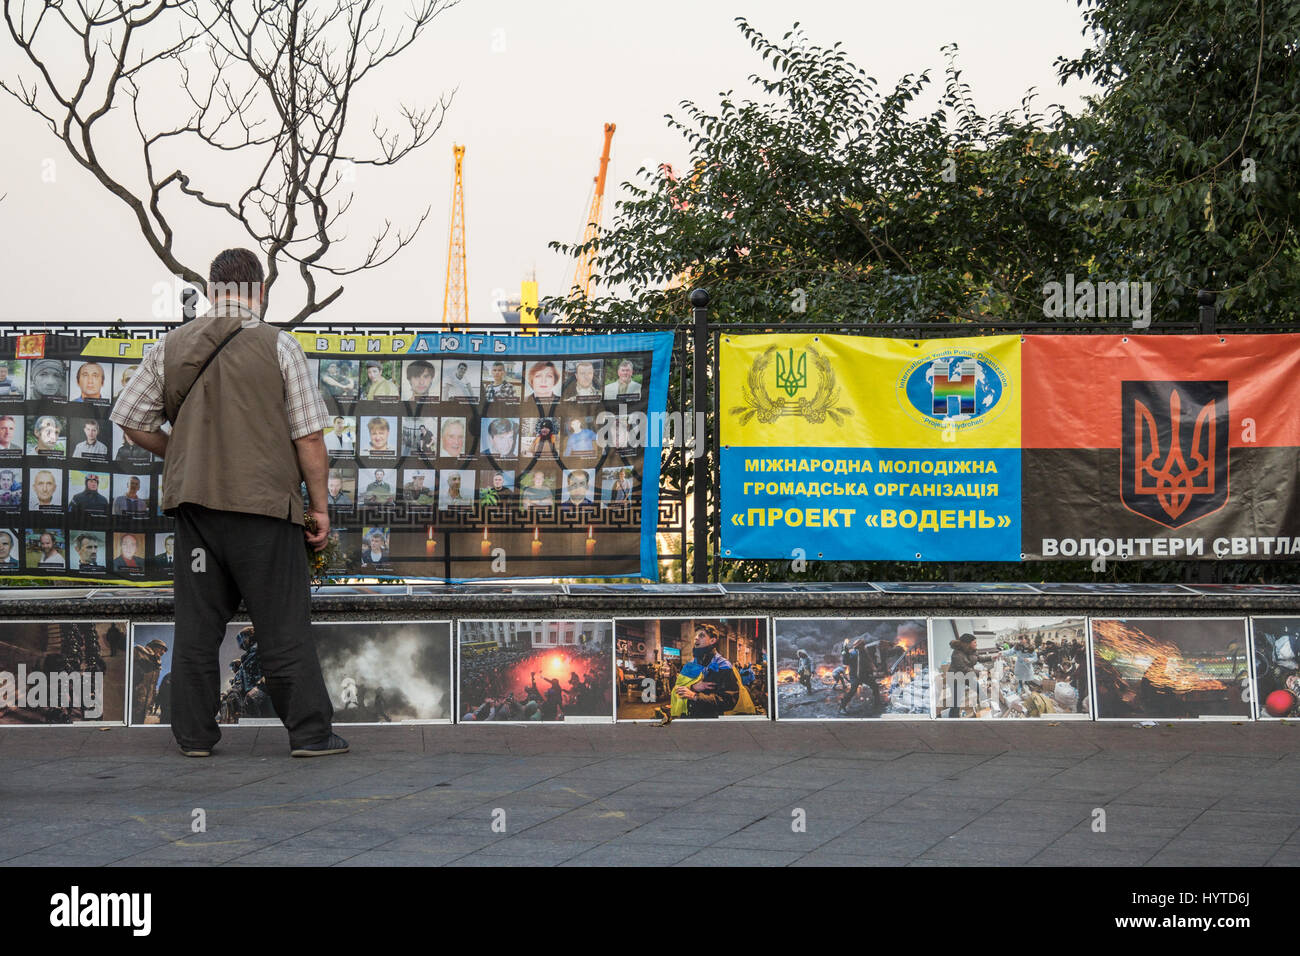 ODESSA, UKRAINE - 14. August 2015: Toter zahlenden Bezug auf das Volk während der Maidan - Revolten Euromajdan 2014 an einem Denkmal, errichtet in Ode Stockfoto